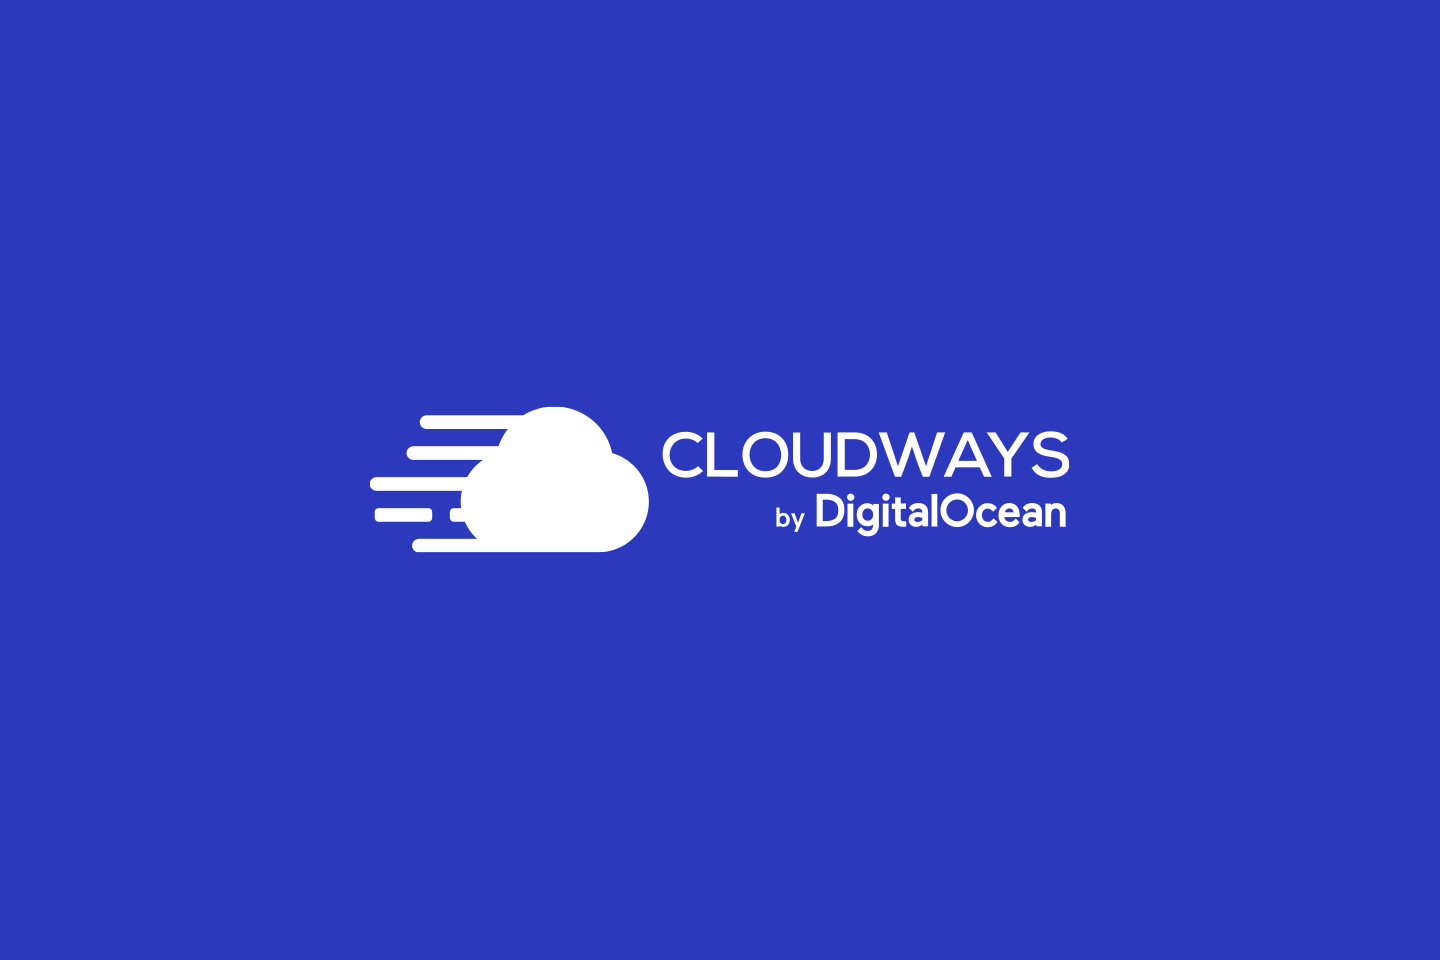 Cloudways: A Quick Review